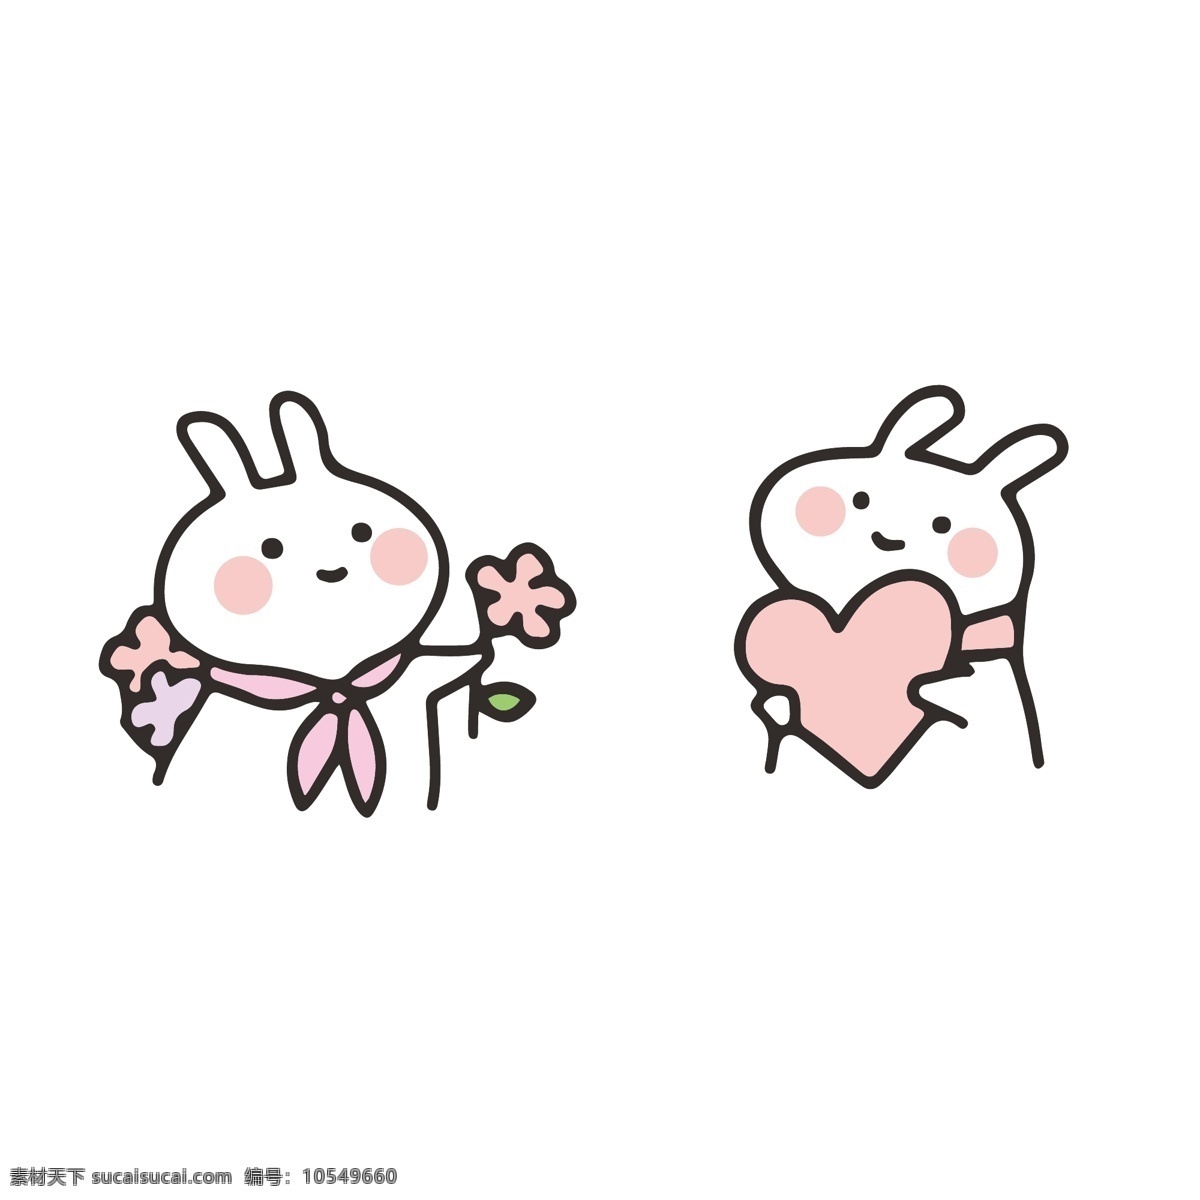 卡通 手绘 情侣 兔子 图片印花 手机壳 卡通设计